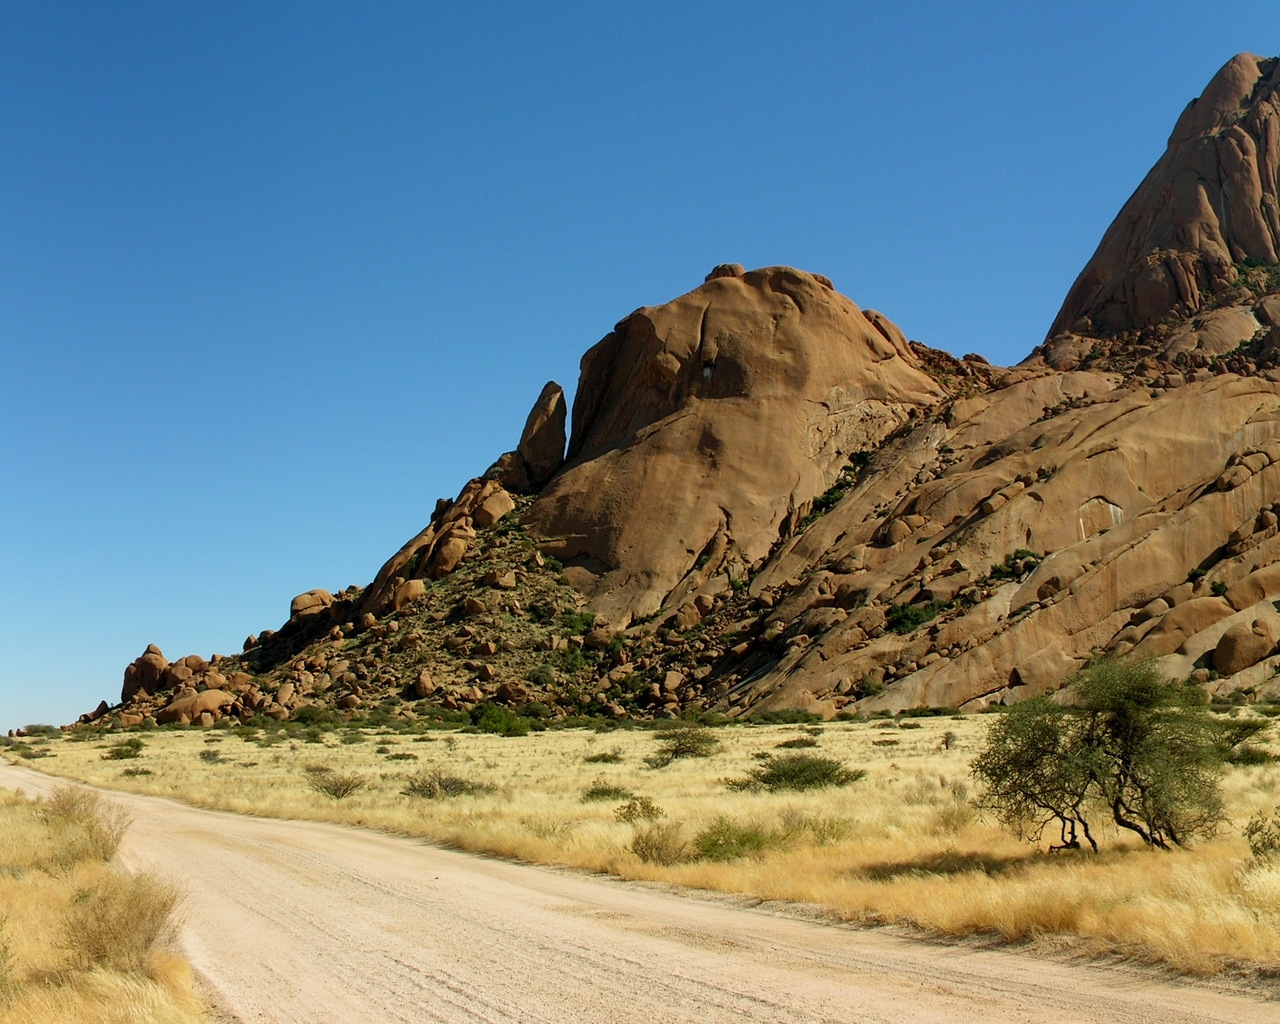 Road in Desert for 1280 x 1024 resolution